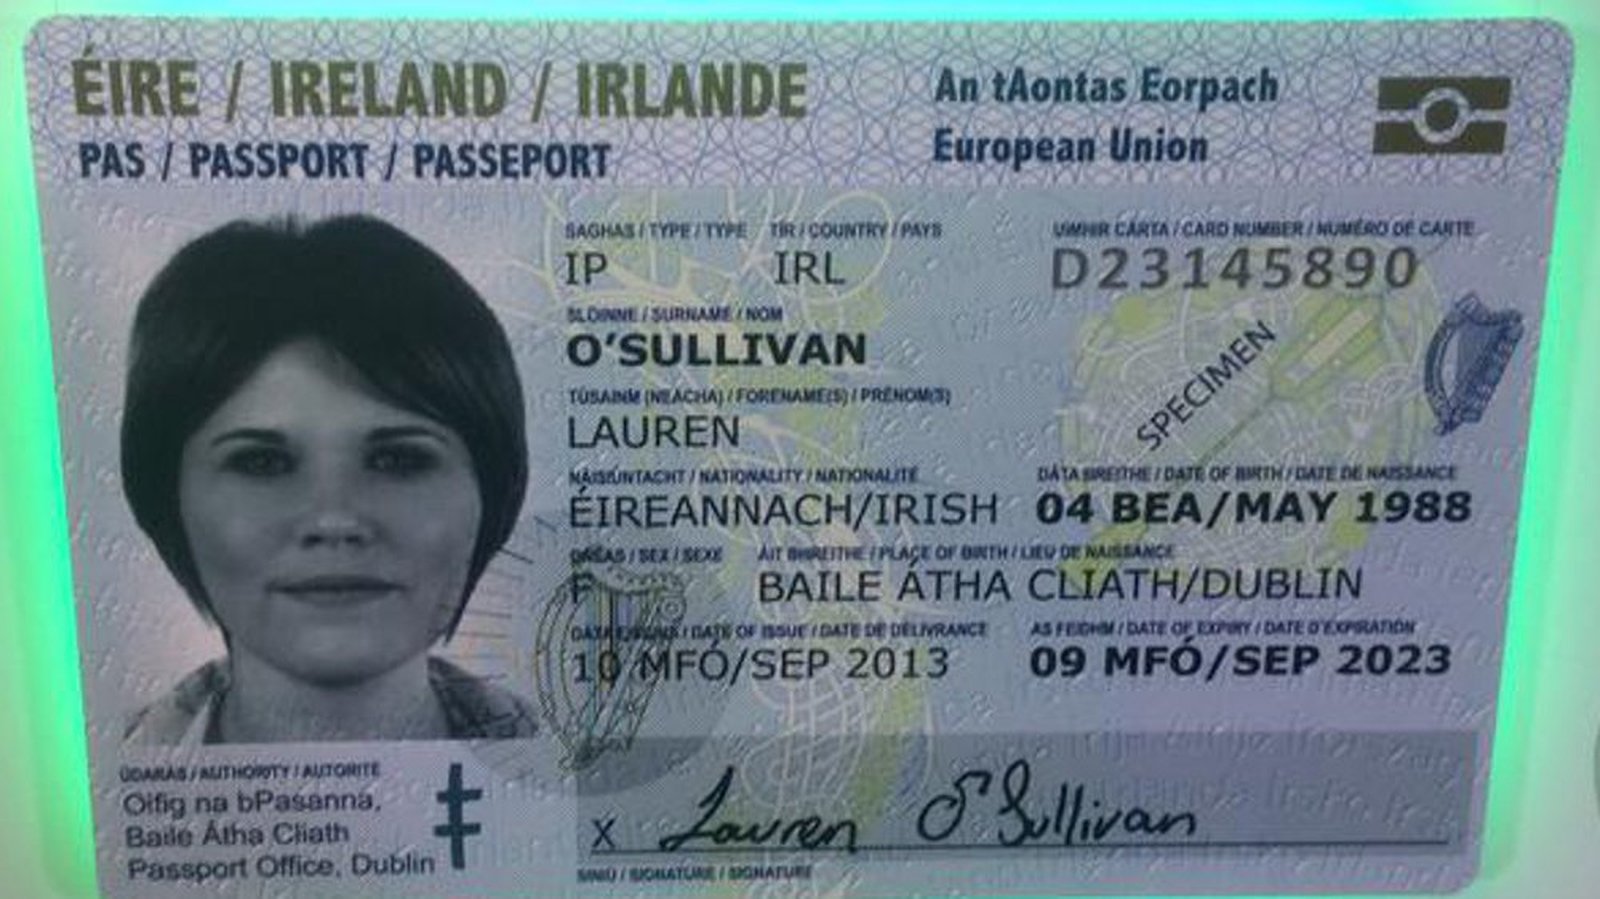 id card for european travel